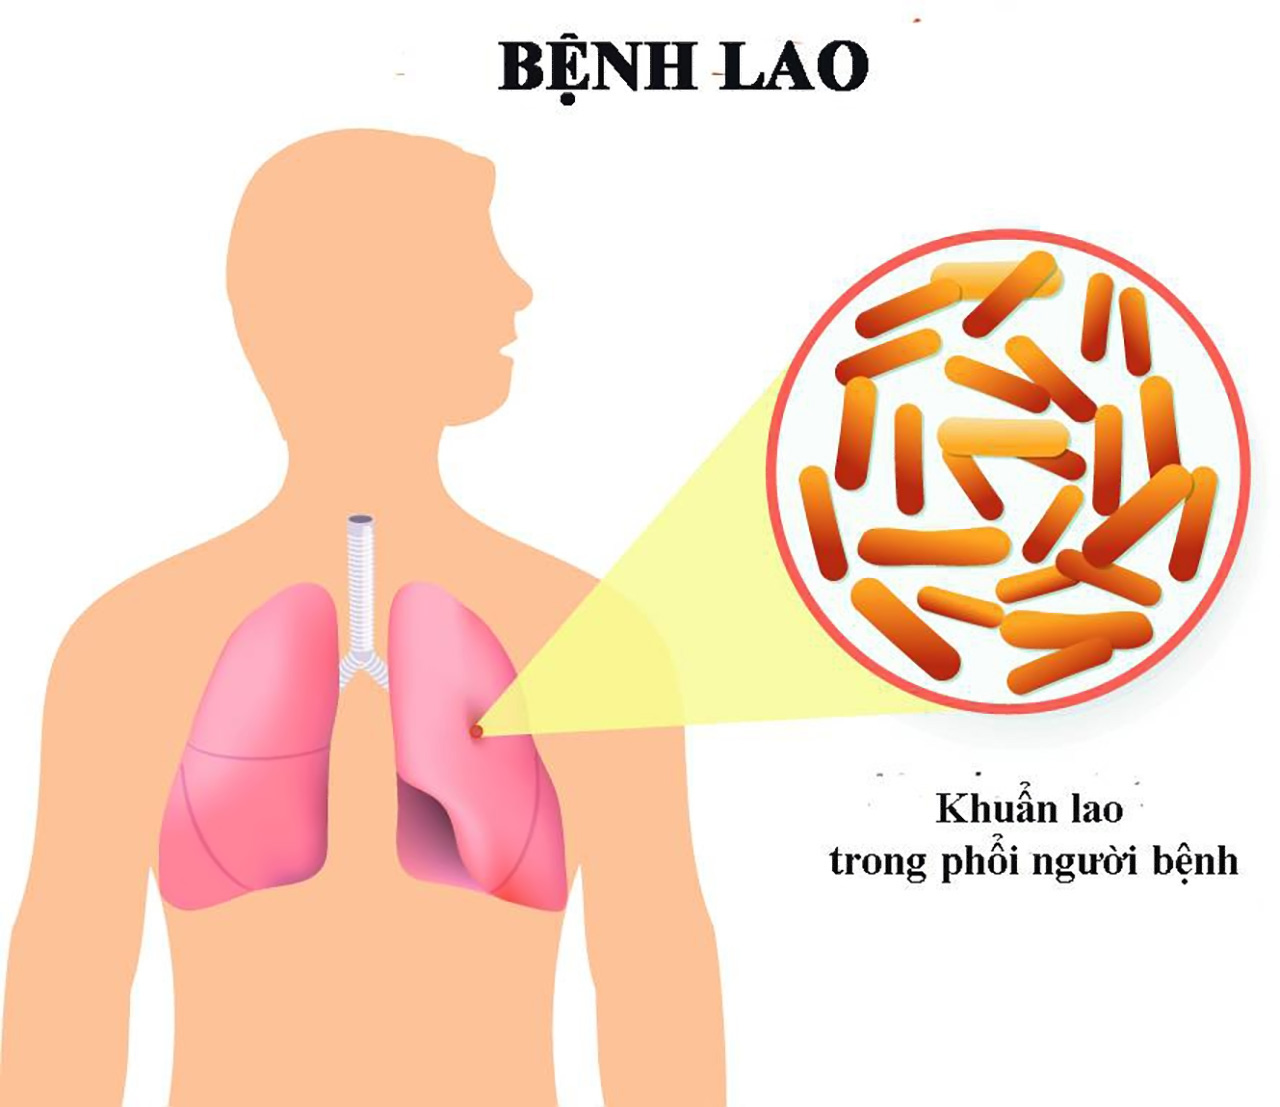 Làm thế nào để phòng ngừa bệnh lao phổi kháng thuốc?
